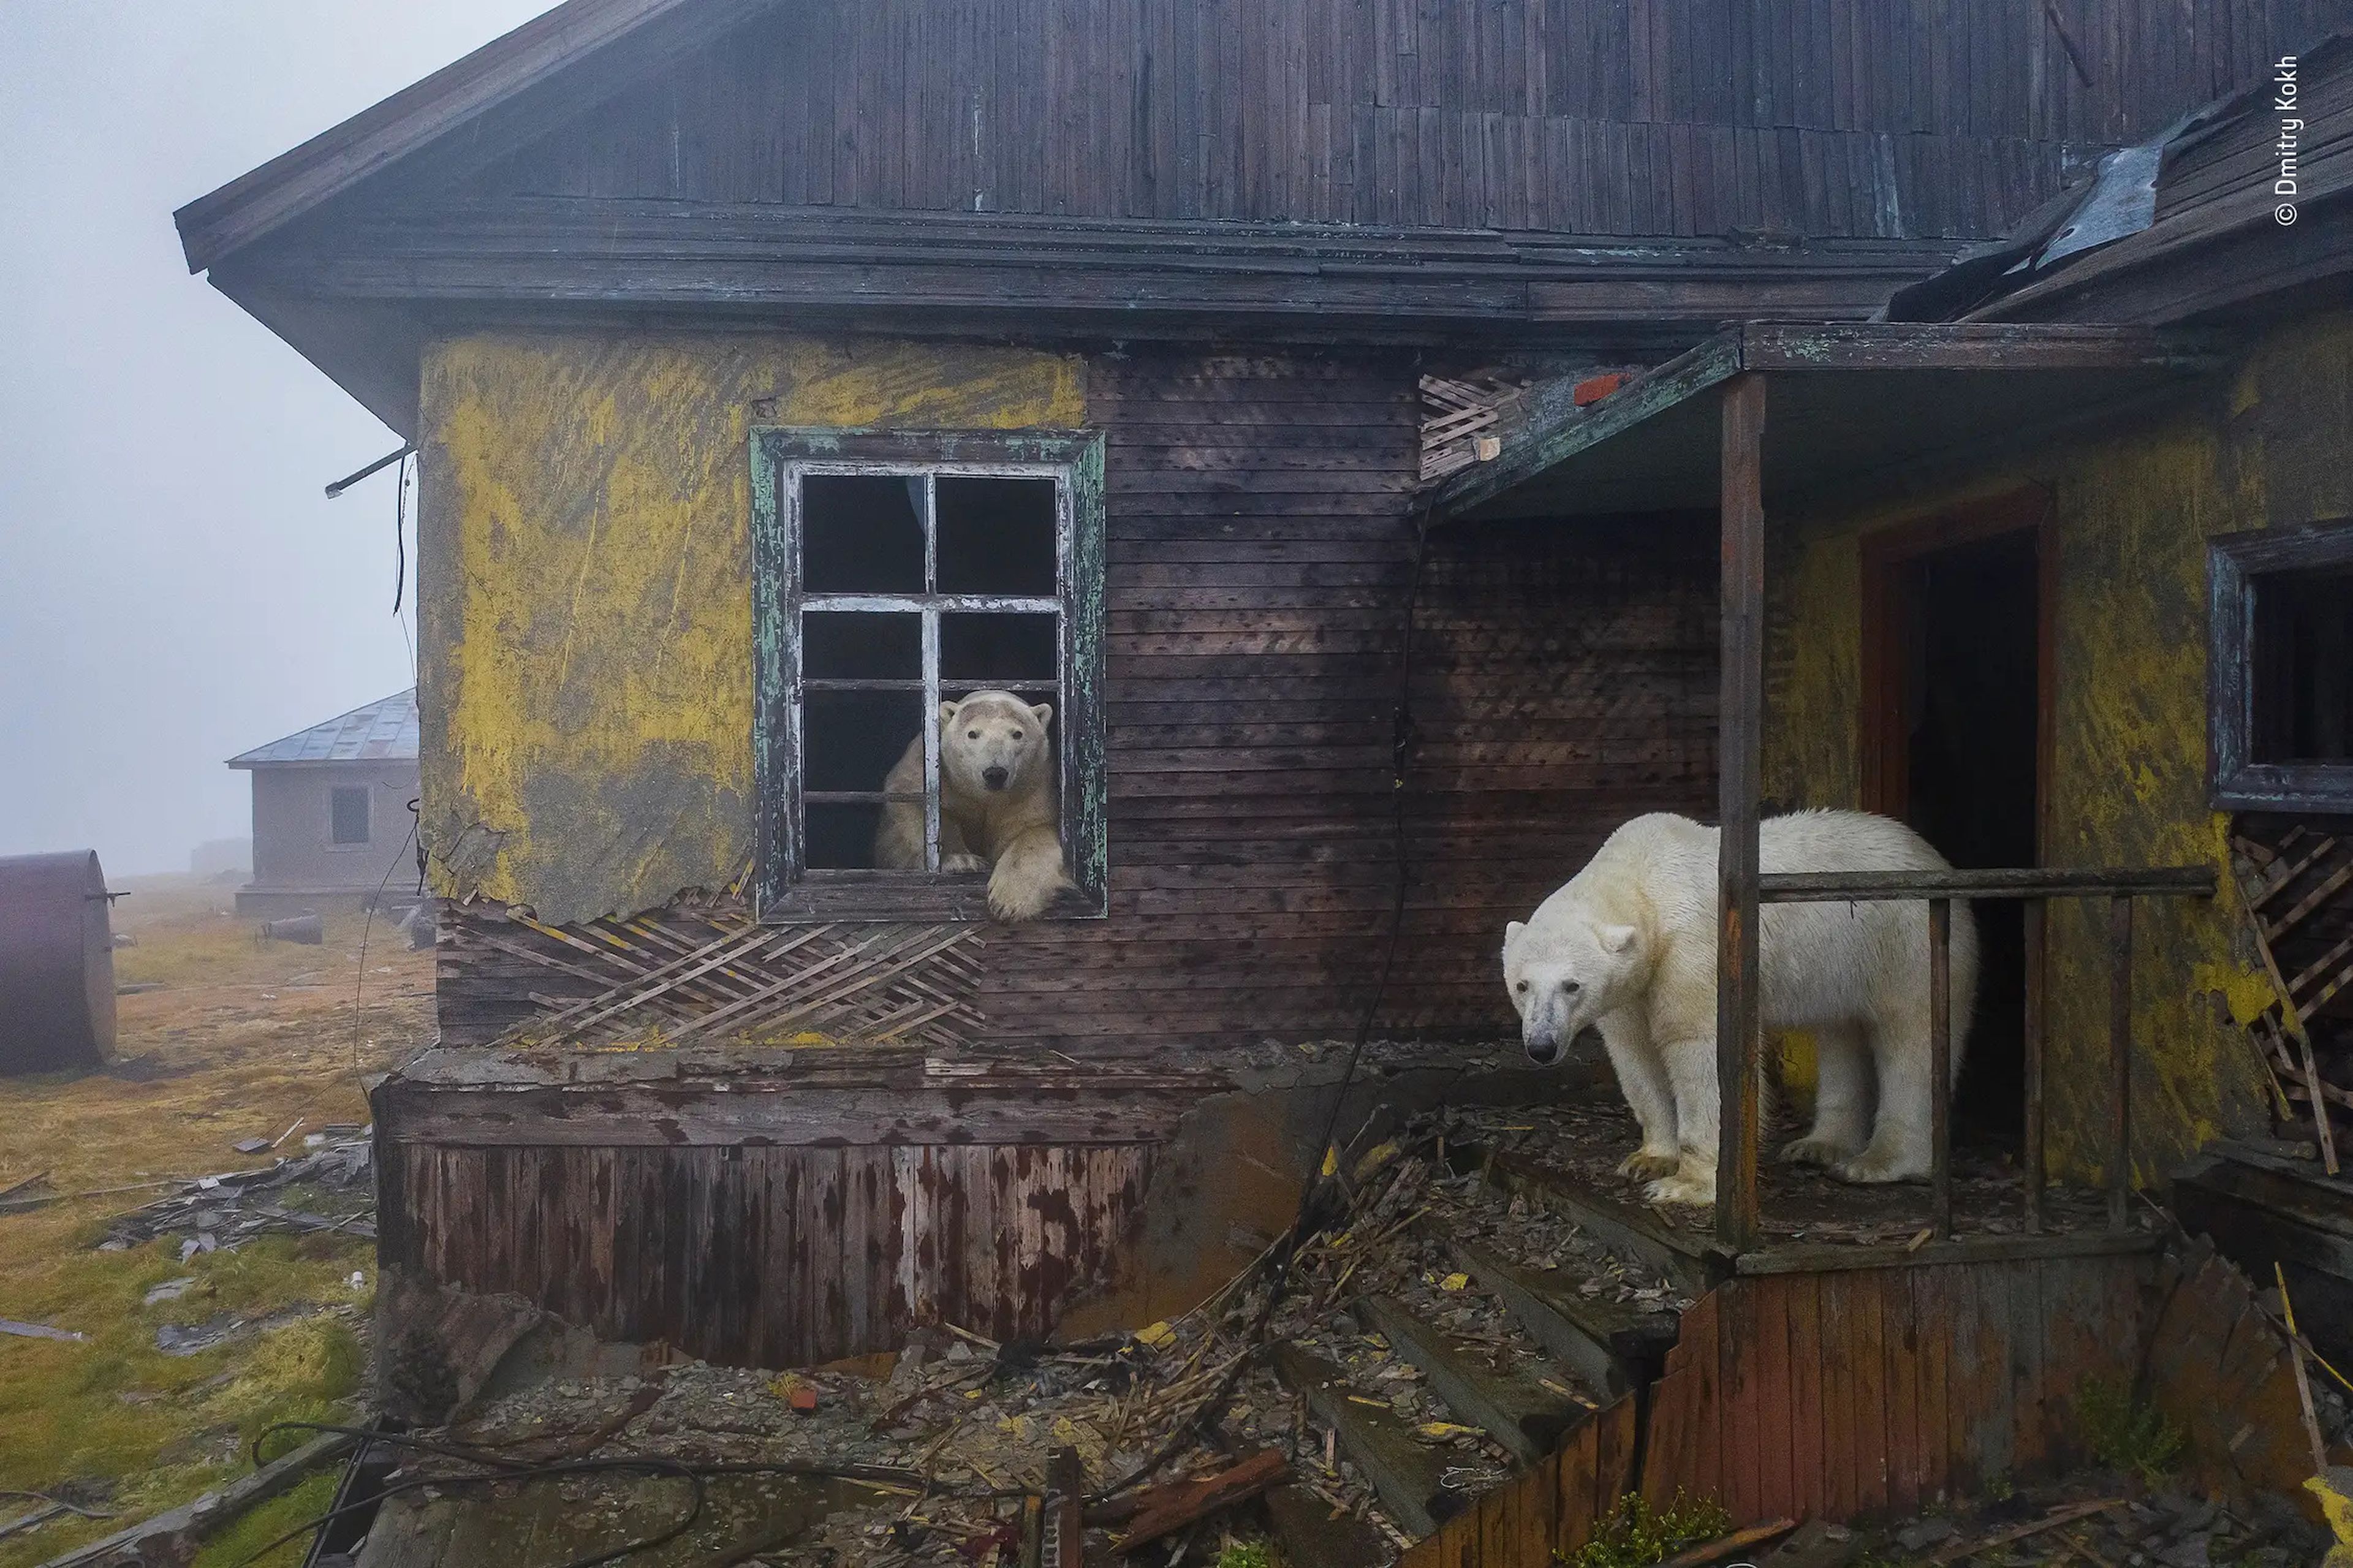 two polar bears in a run down house